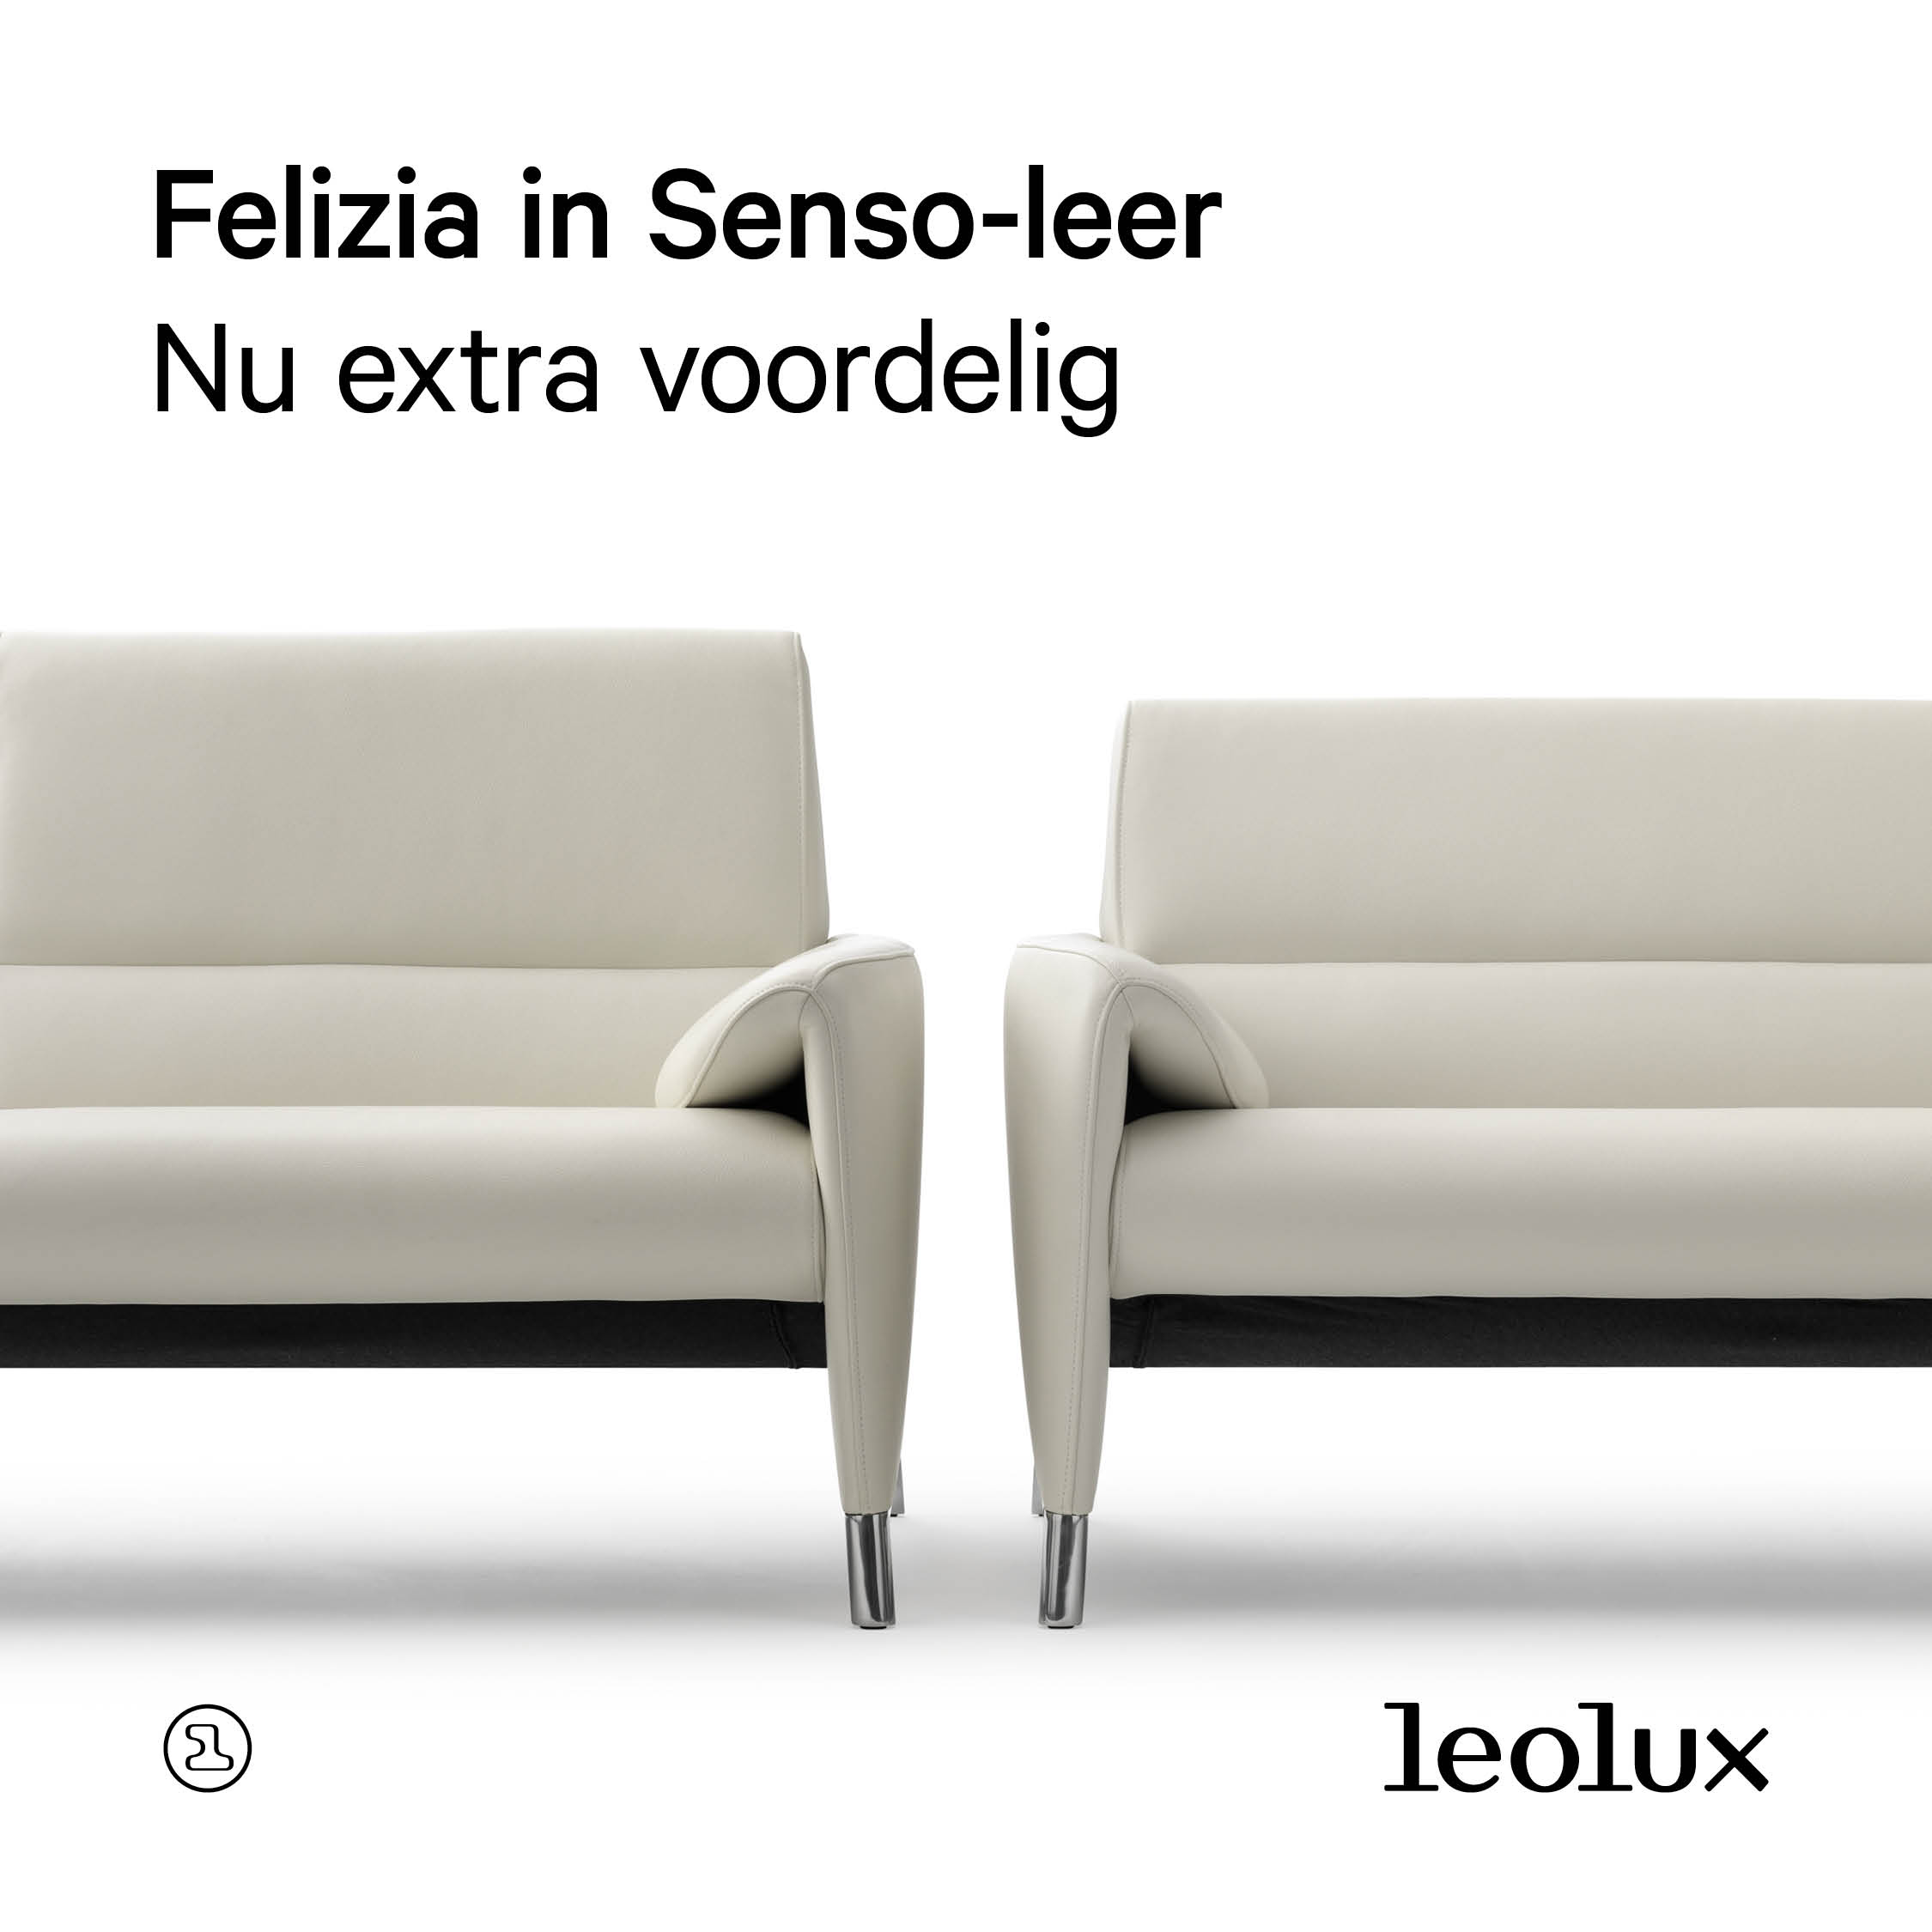 1 Leolux Social Pack Felizia NLB 1080x1080 tekst